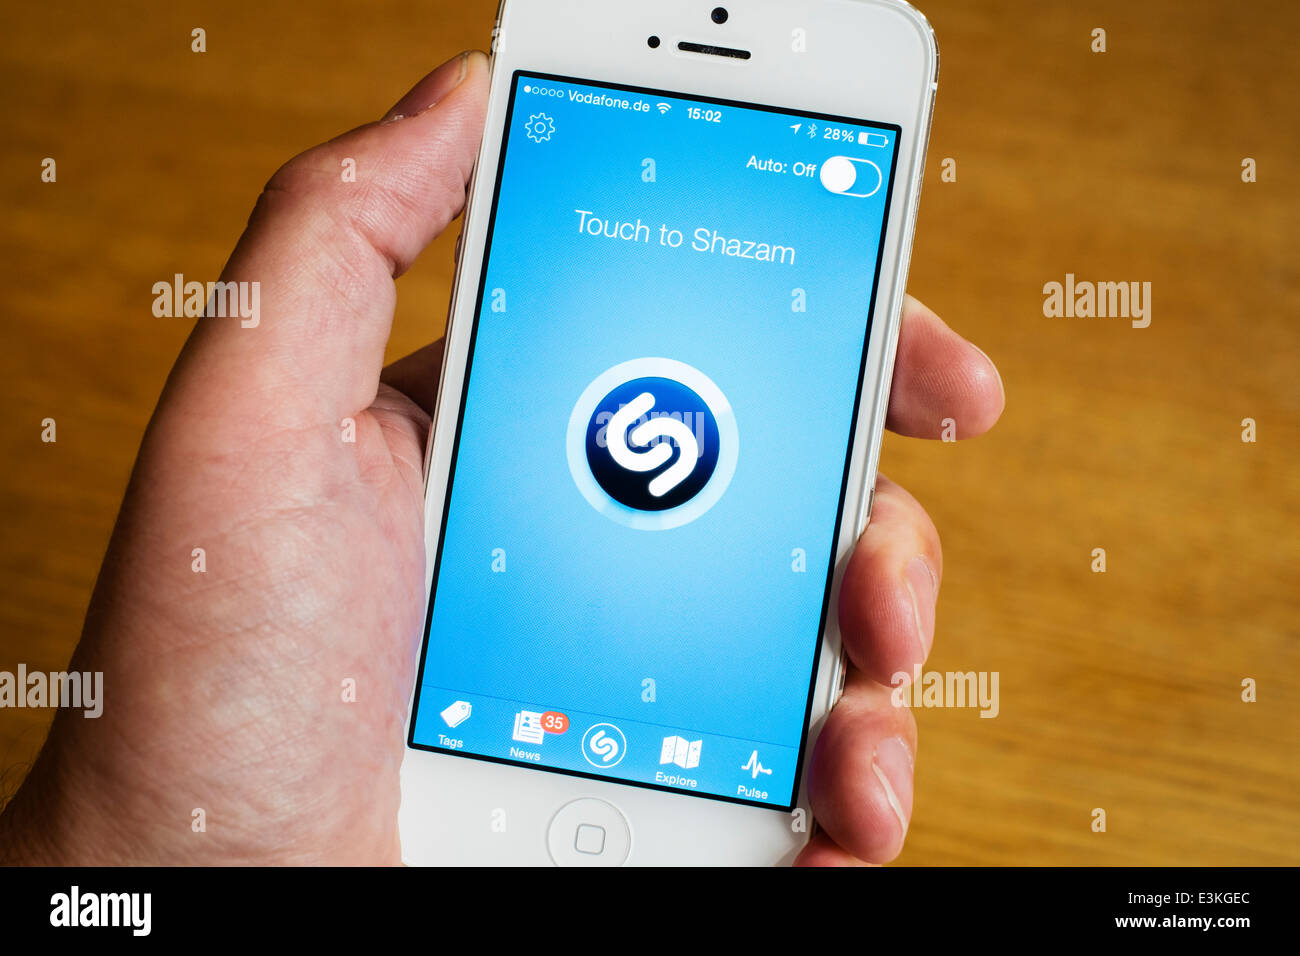 Detalle de la página de inicio de la línea de reconocimiento de música Shazam mobile app en el iPhone teléfonos inteligentes. Foto de stock